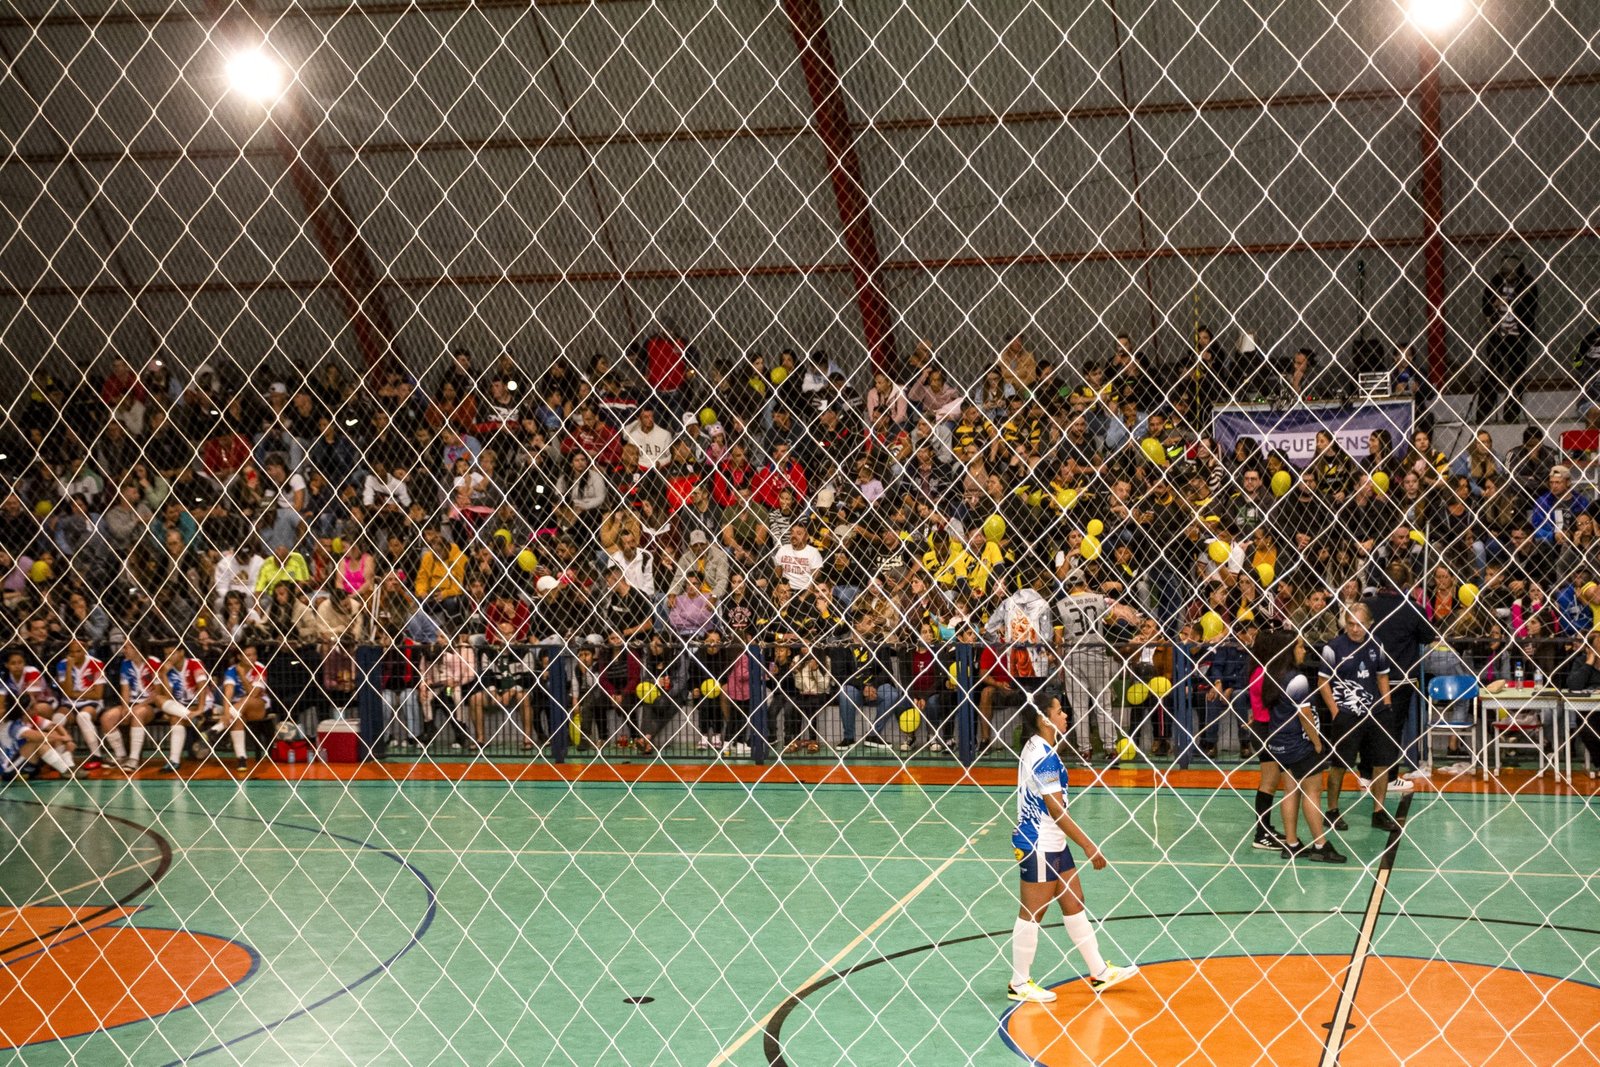 Final do Futsal de Inverno terá ingresso solidário em Artur NogueiraPartidas acontecem neste sábado (12), no Ginásio Maurício Sia, e entrada será mediante a 1L de leite